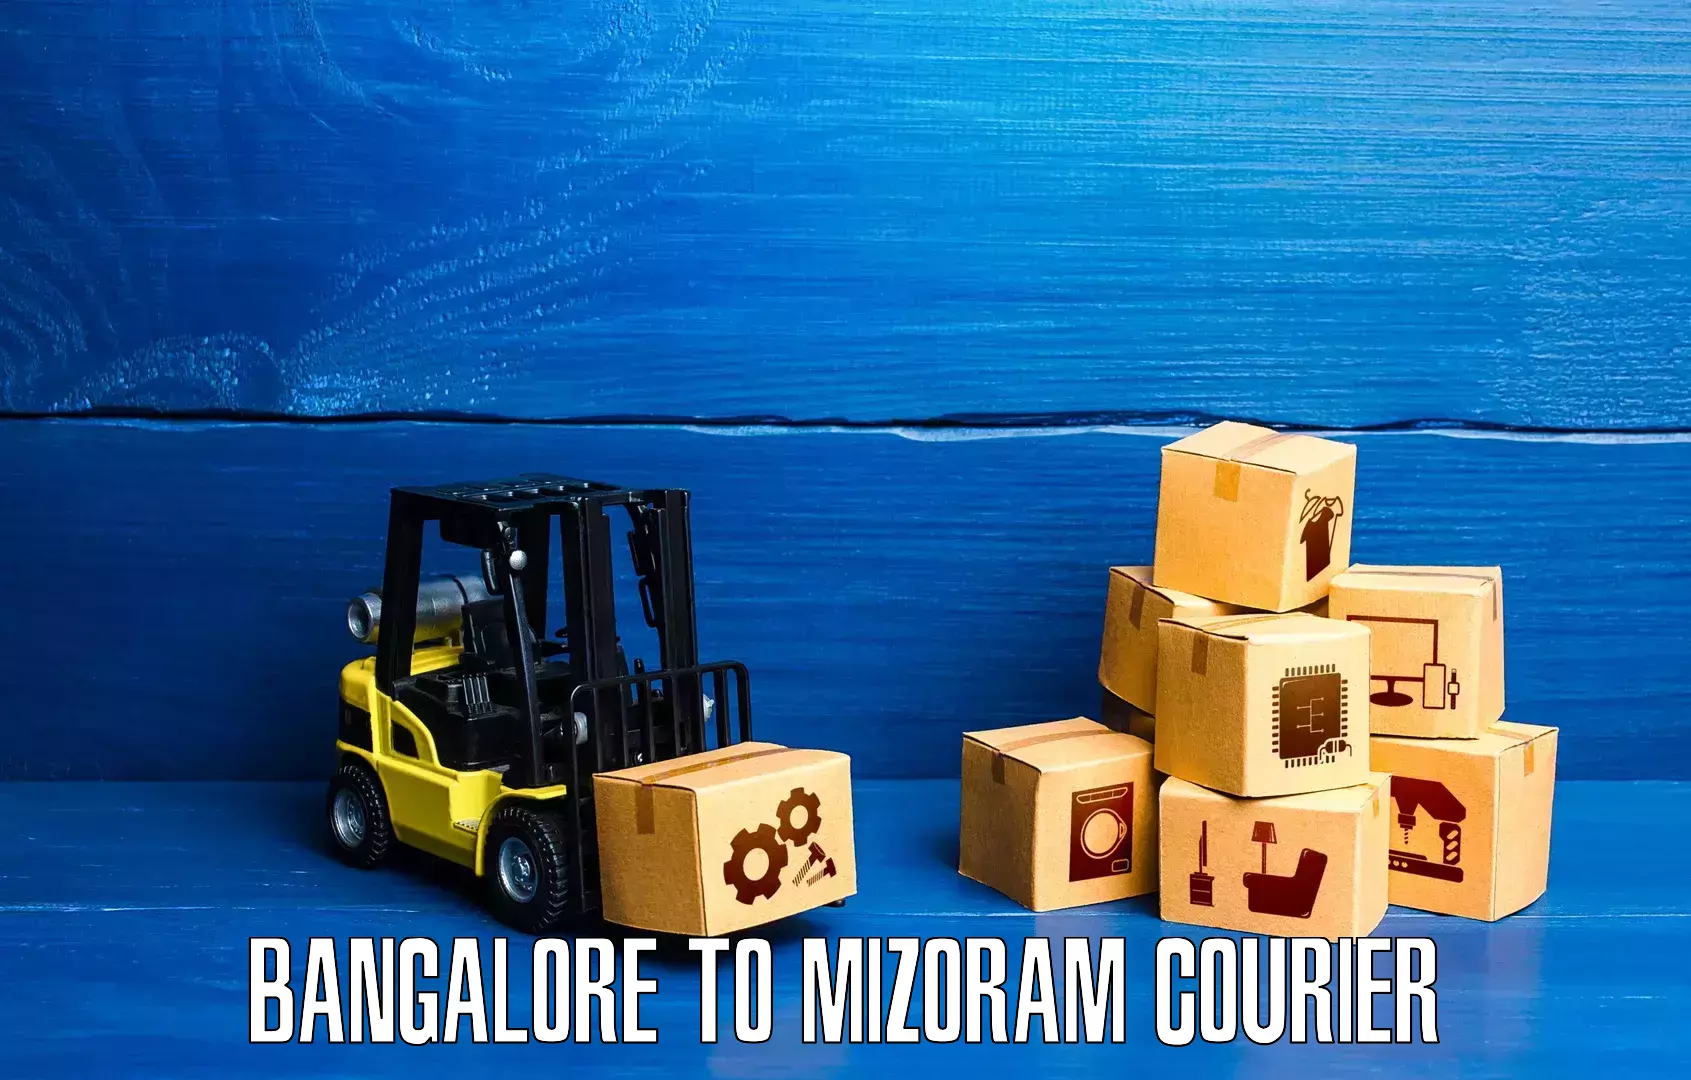 Courier service comparison Bangalore to Aizawl